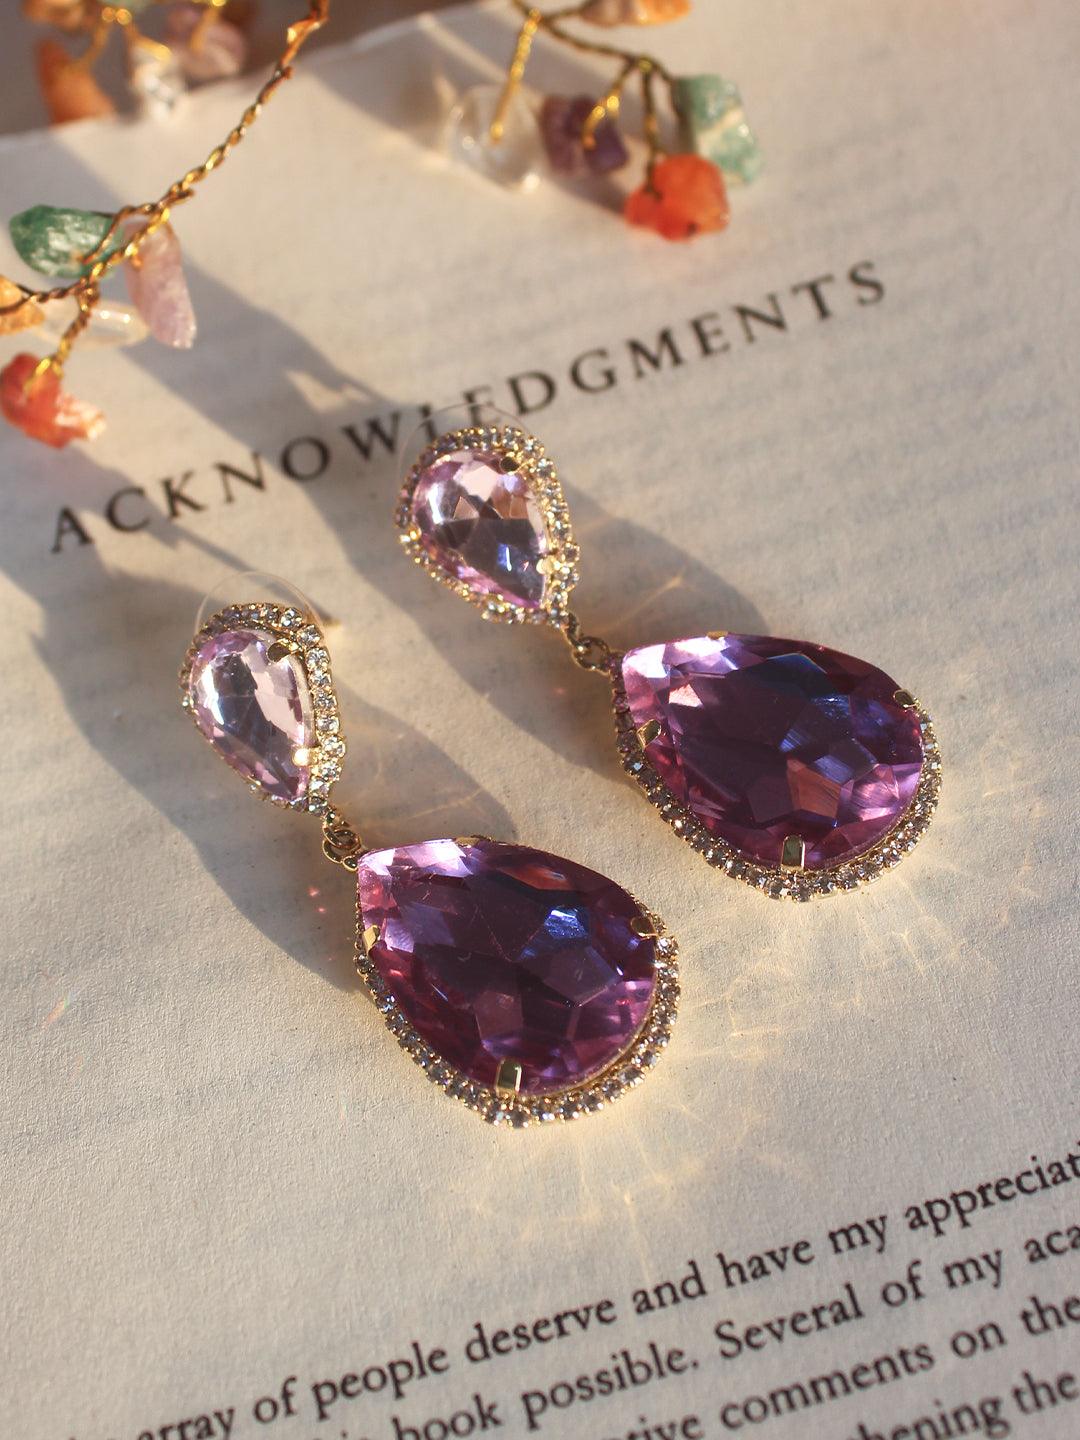 Day-Glow Drop Earrings - Zeraki Jewels 